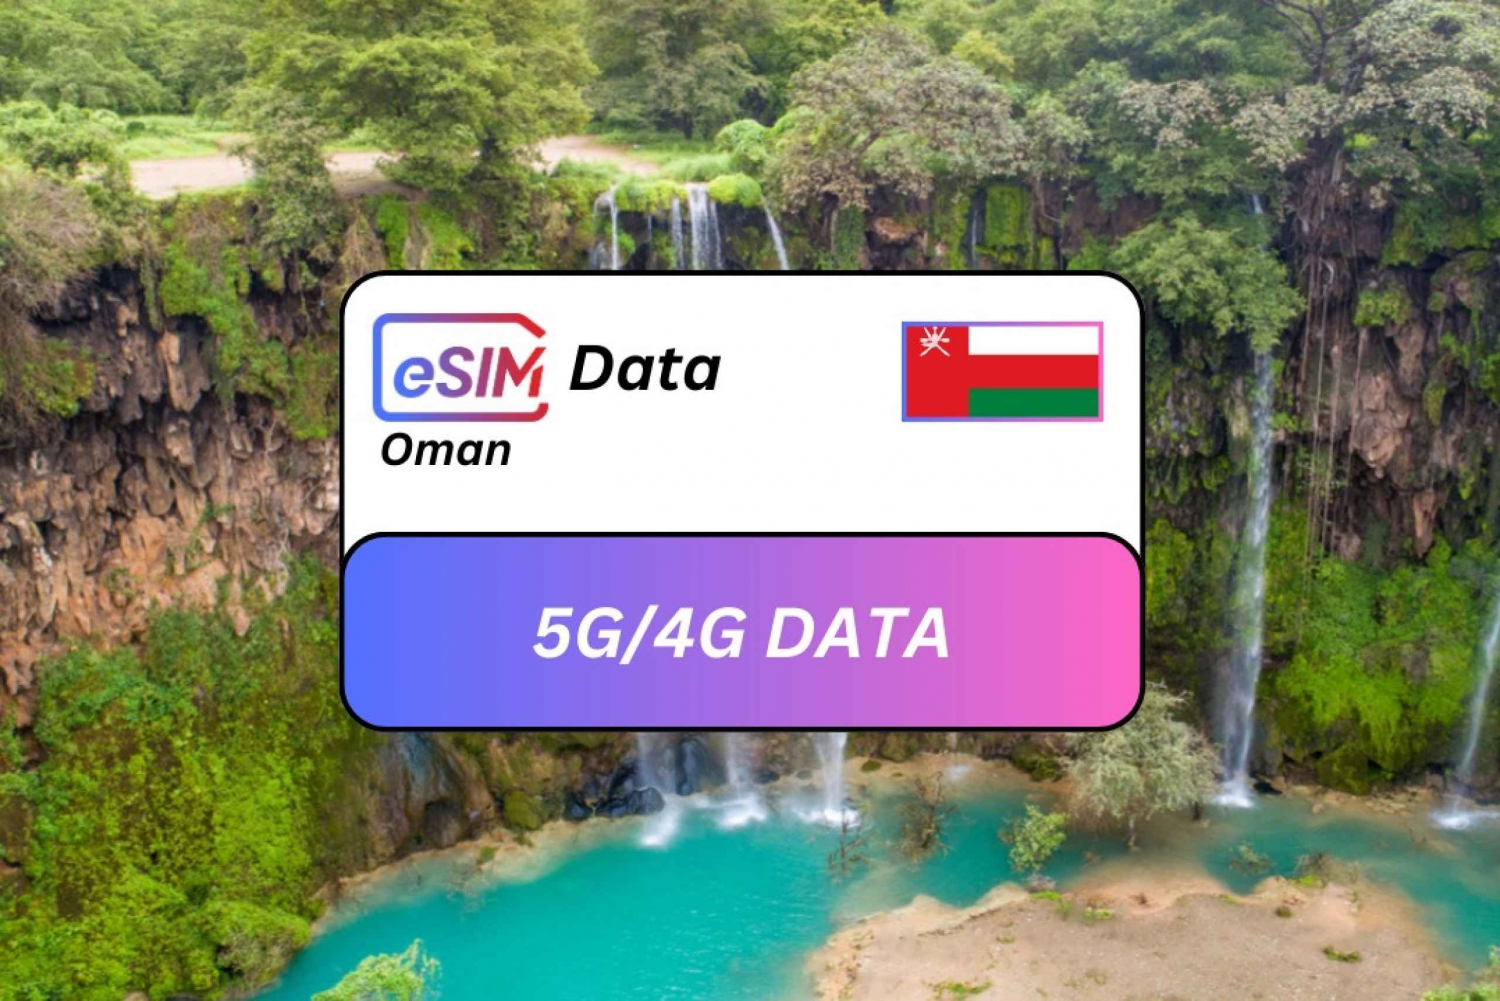 Salalah: Oman Seamless eSIM Roaming Data Plan for Travelers